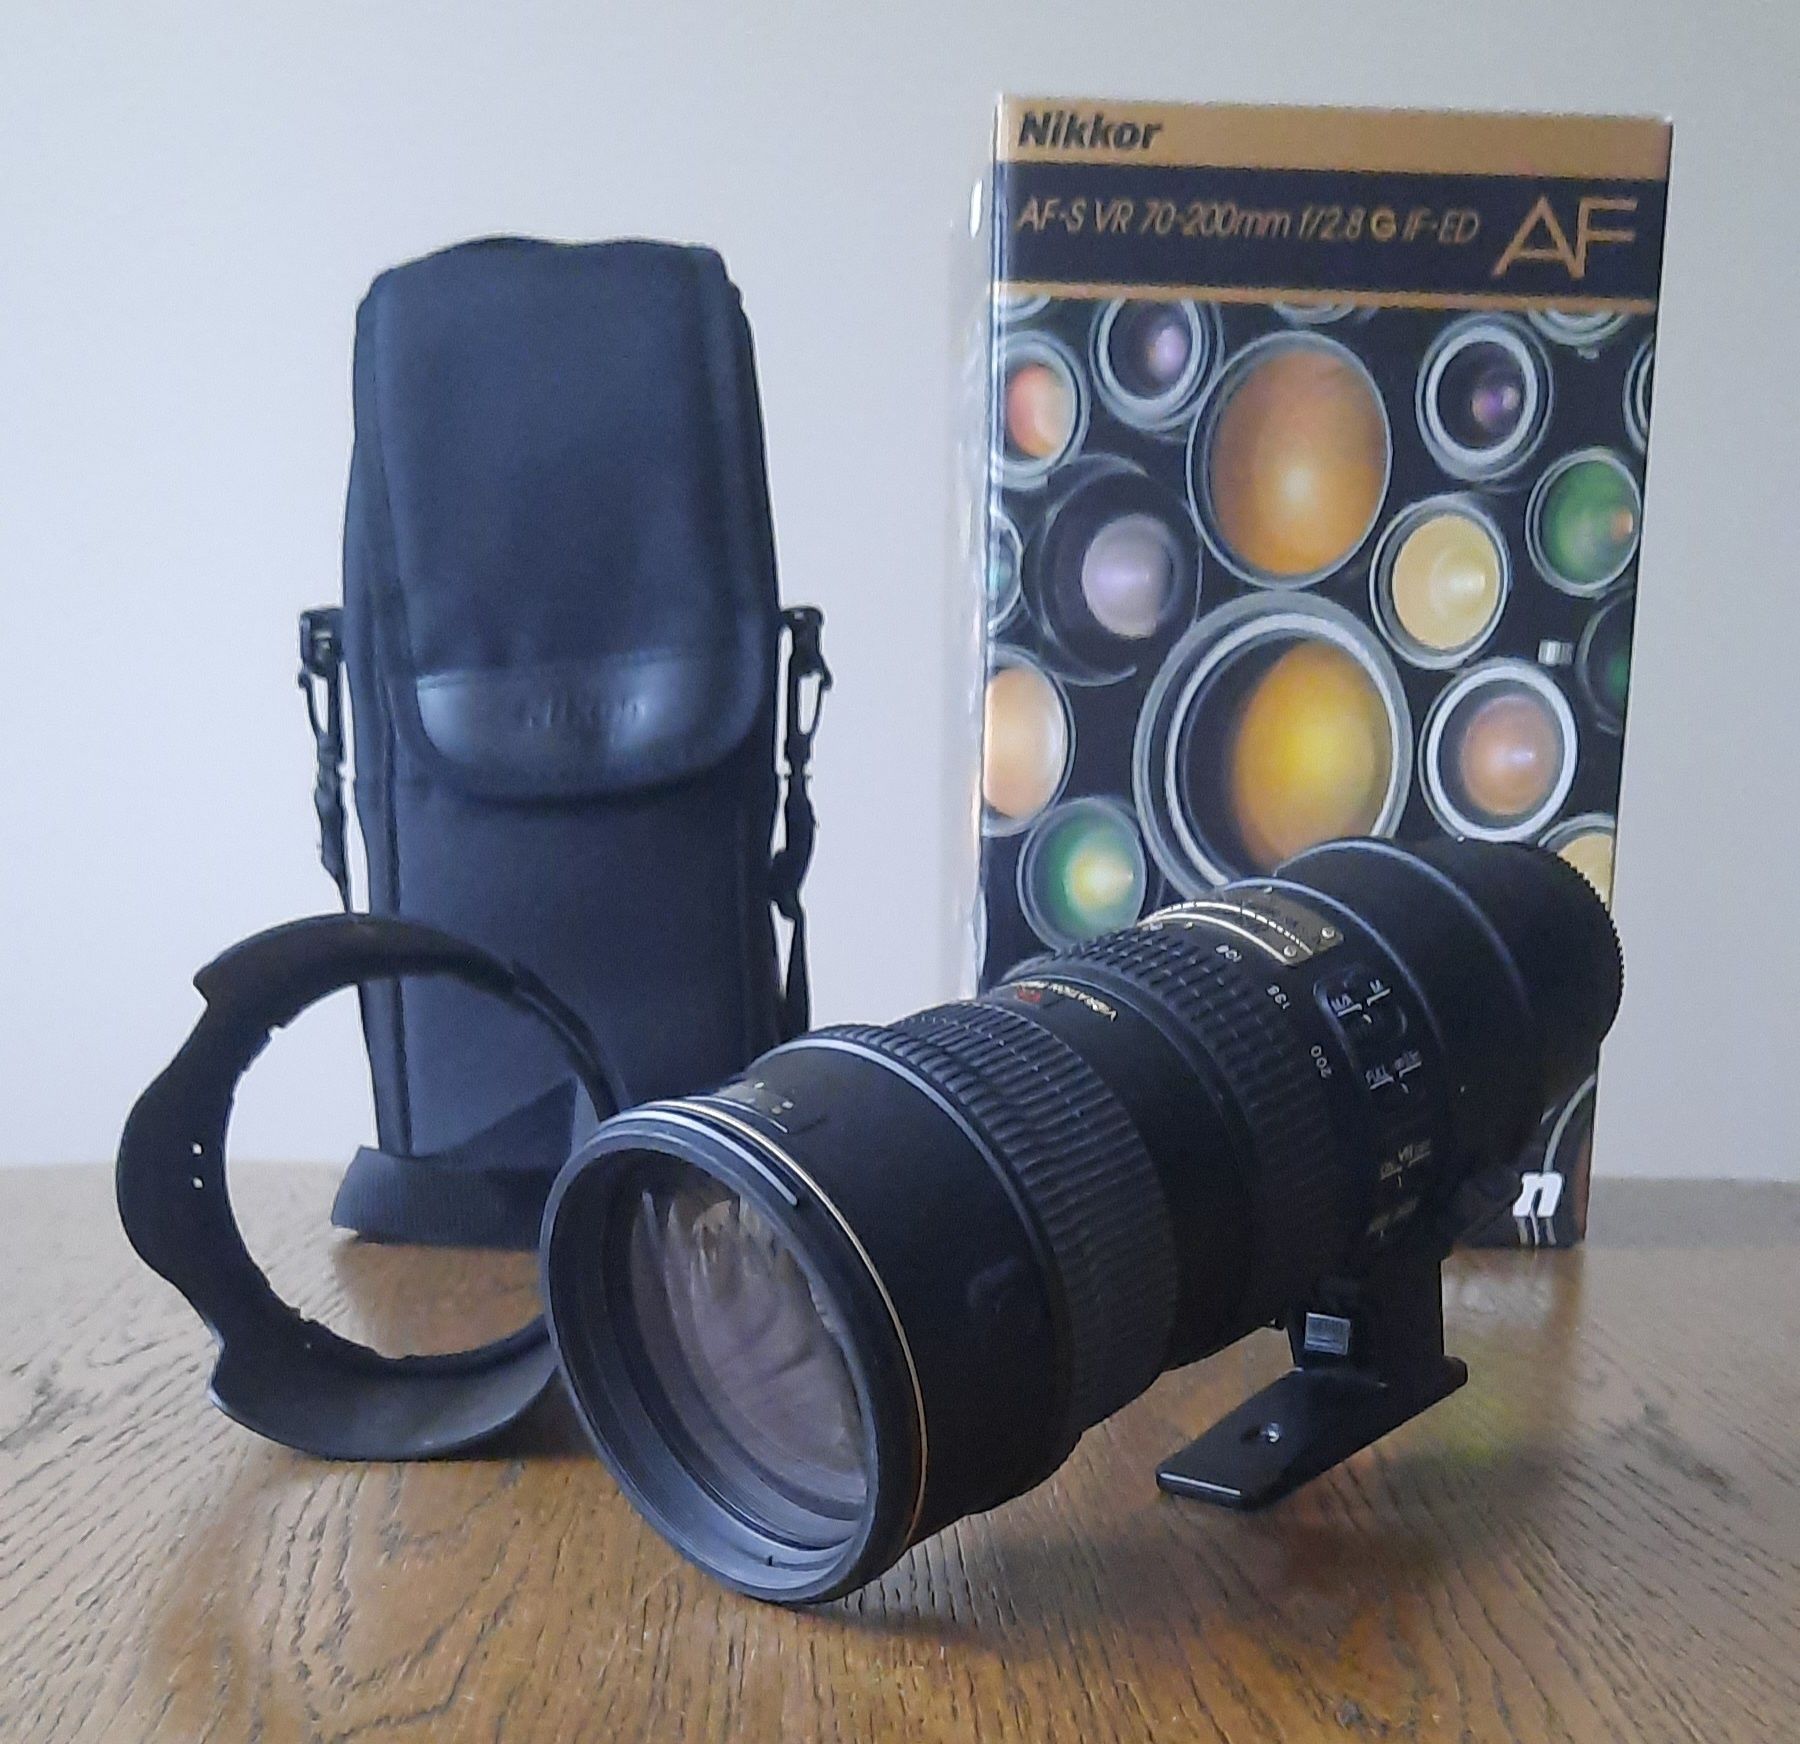 Obiektyw Nikon AF-S VR 70-200mm f/2,8 G IF-ED